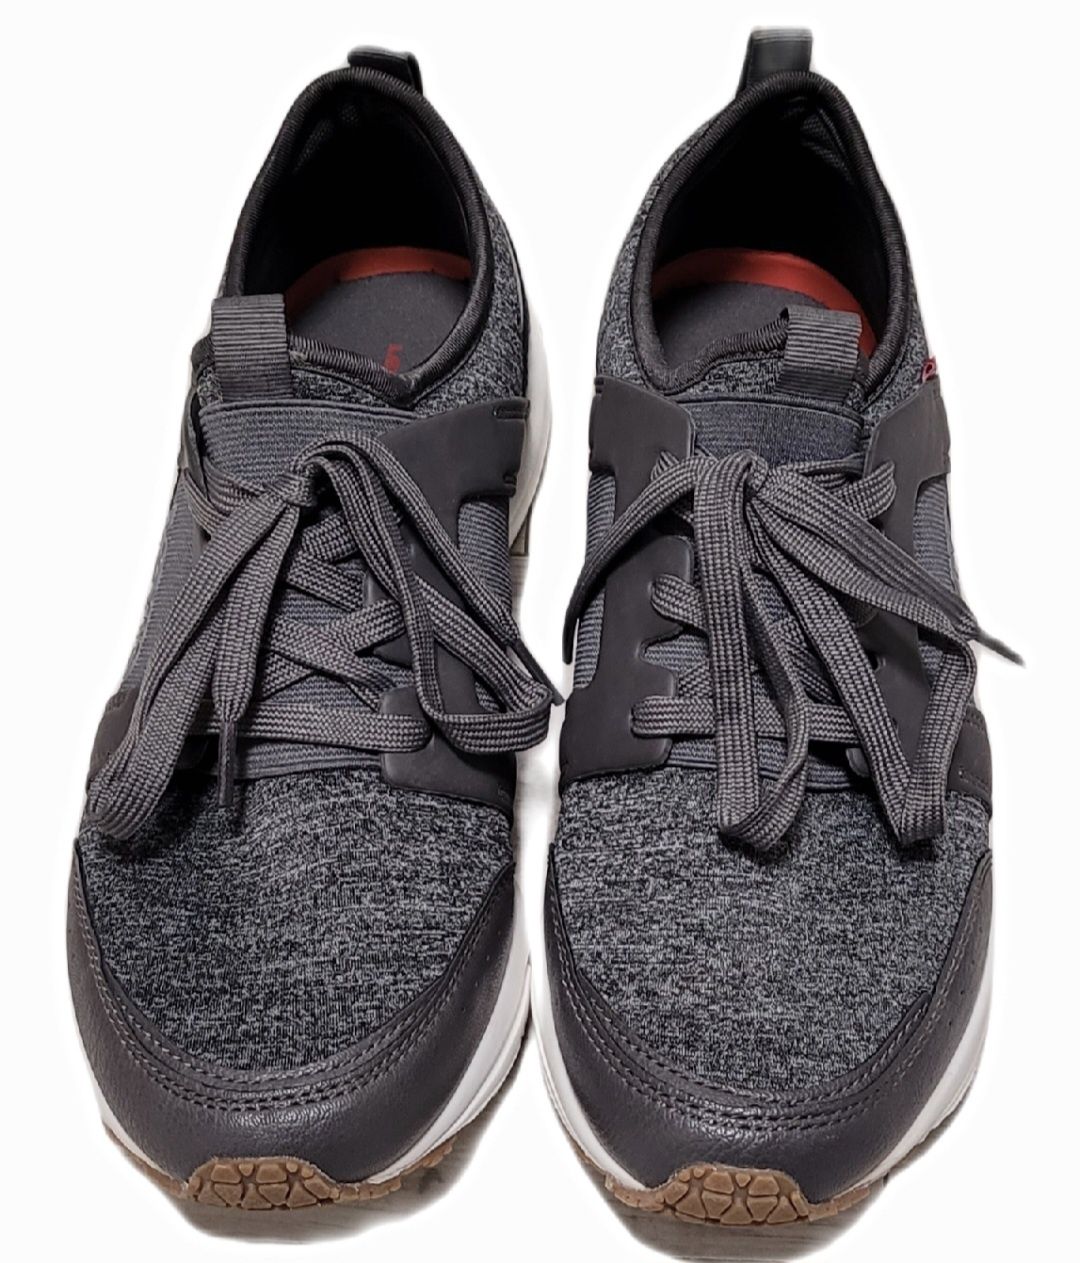 Buty Levis Comfort r43 użyte raz, jak nowe super lekkie sneakersy